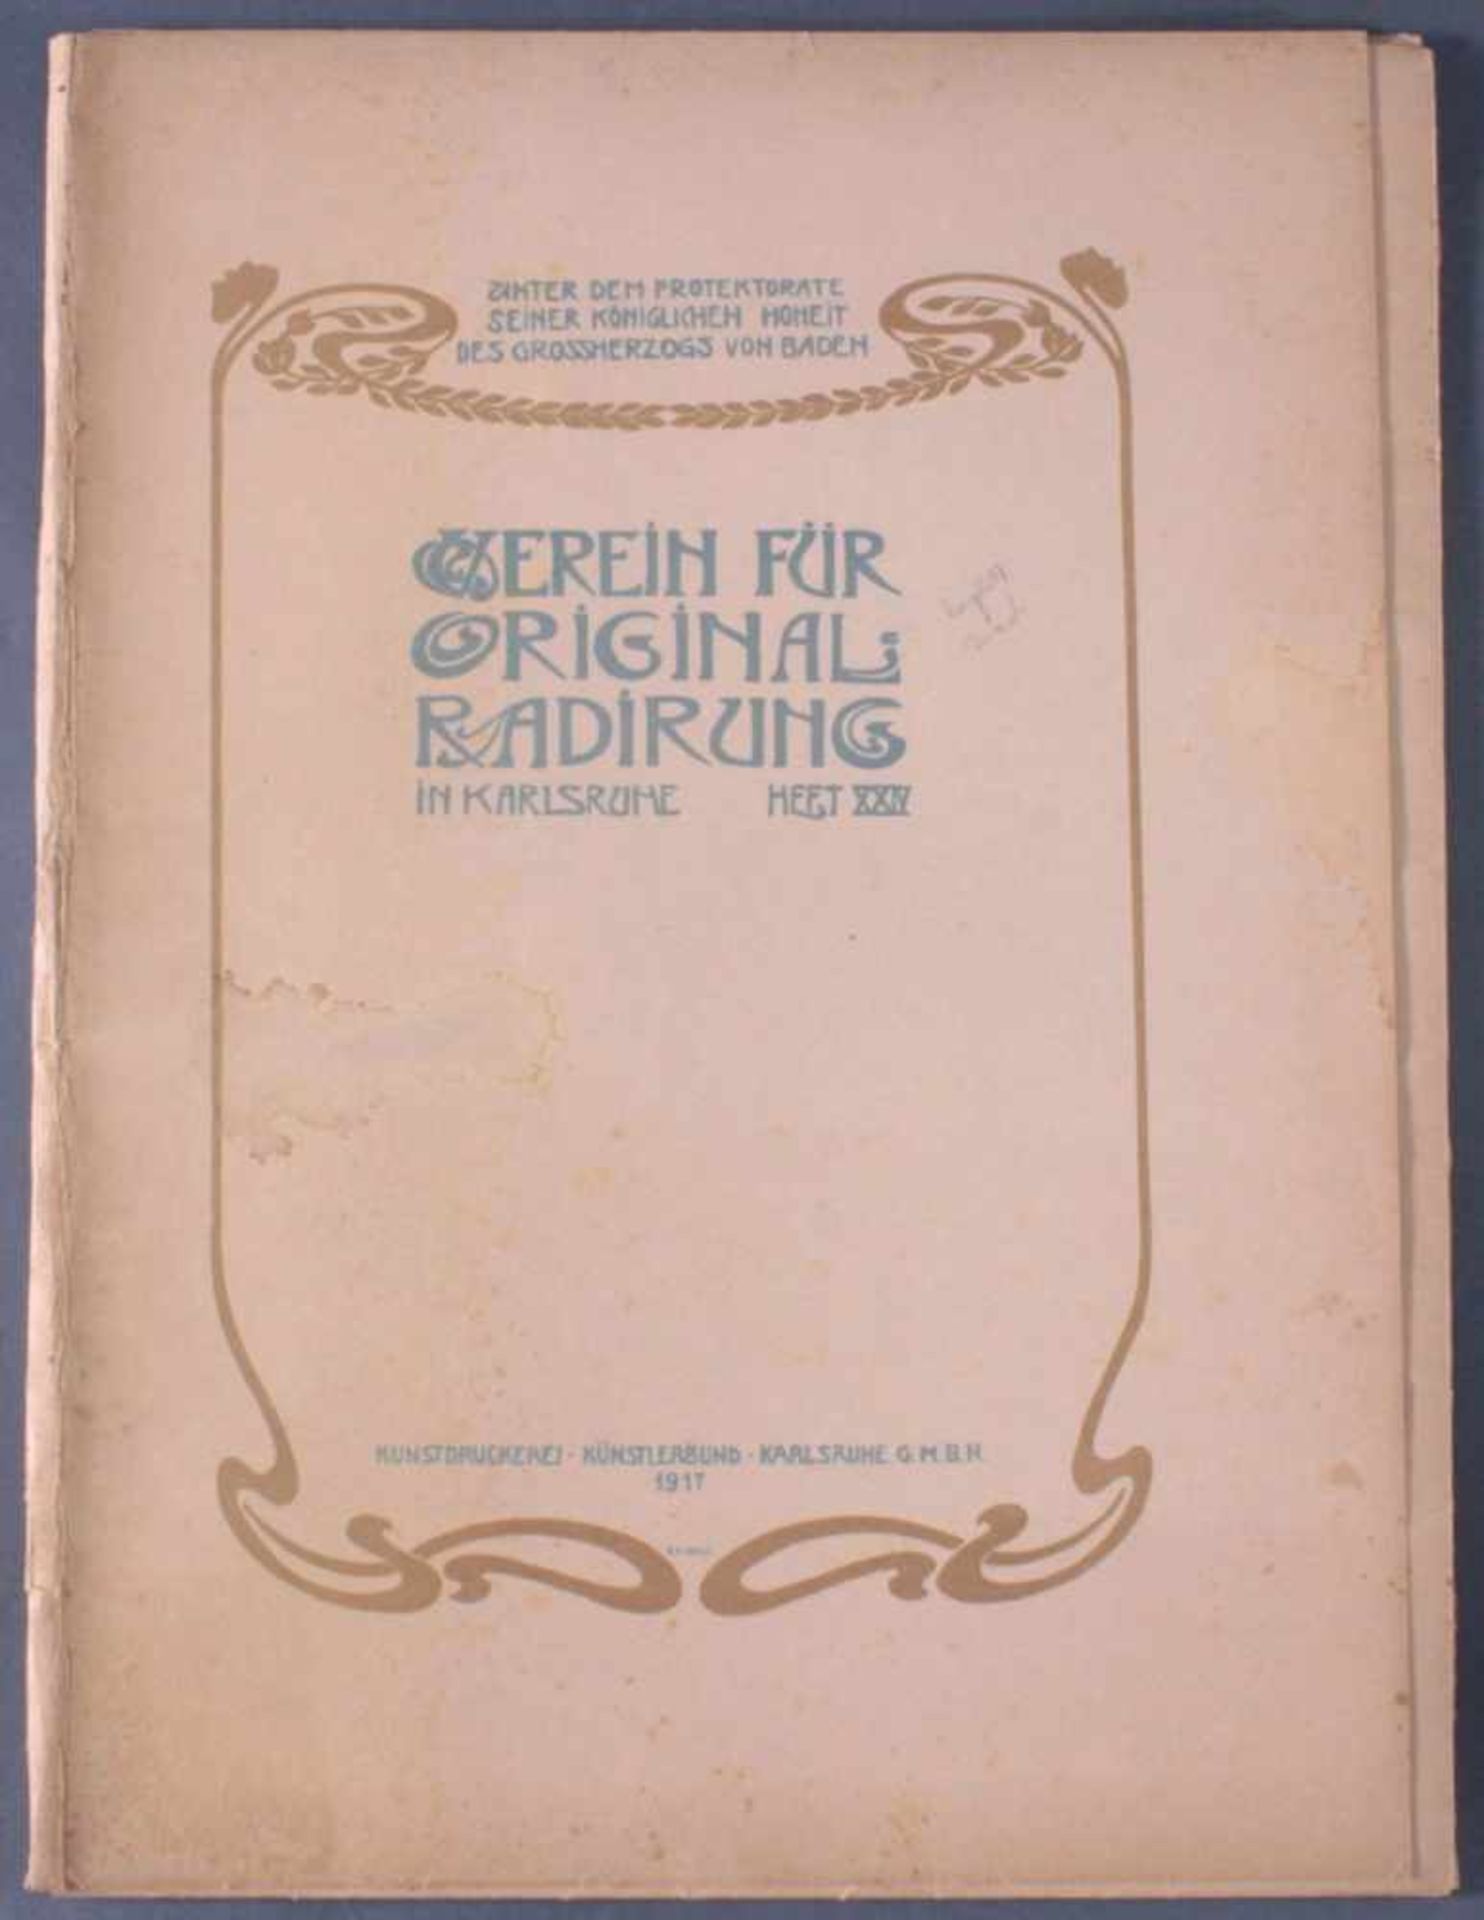 Verein für Original-Radierung Karlsruhe. Heft XXIV, 1917Emil Rudolf Weiß gestaltete, für die